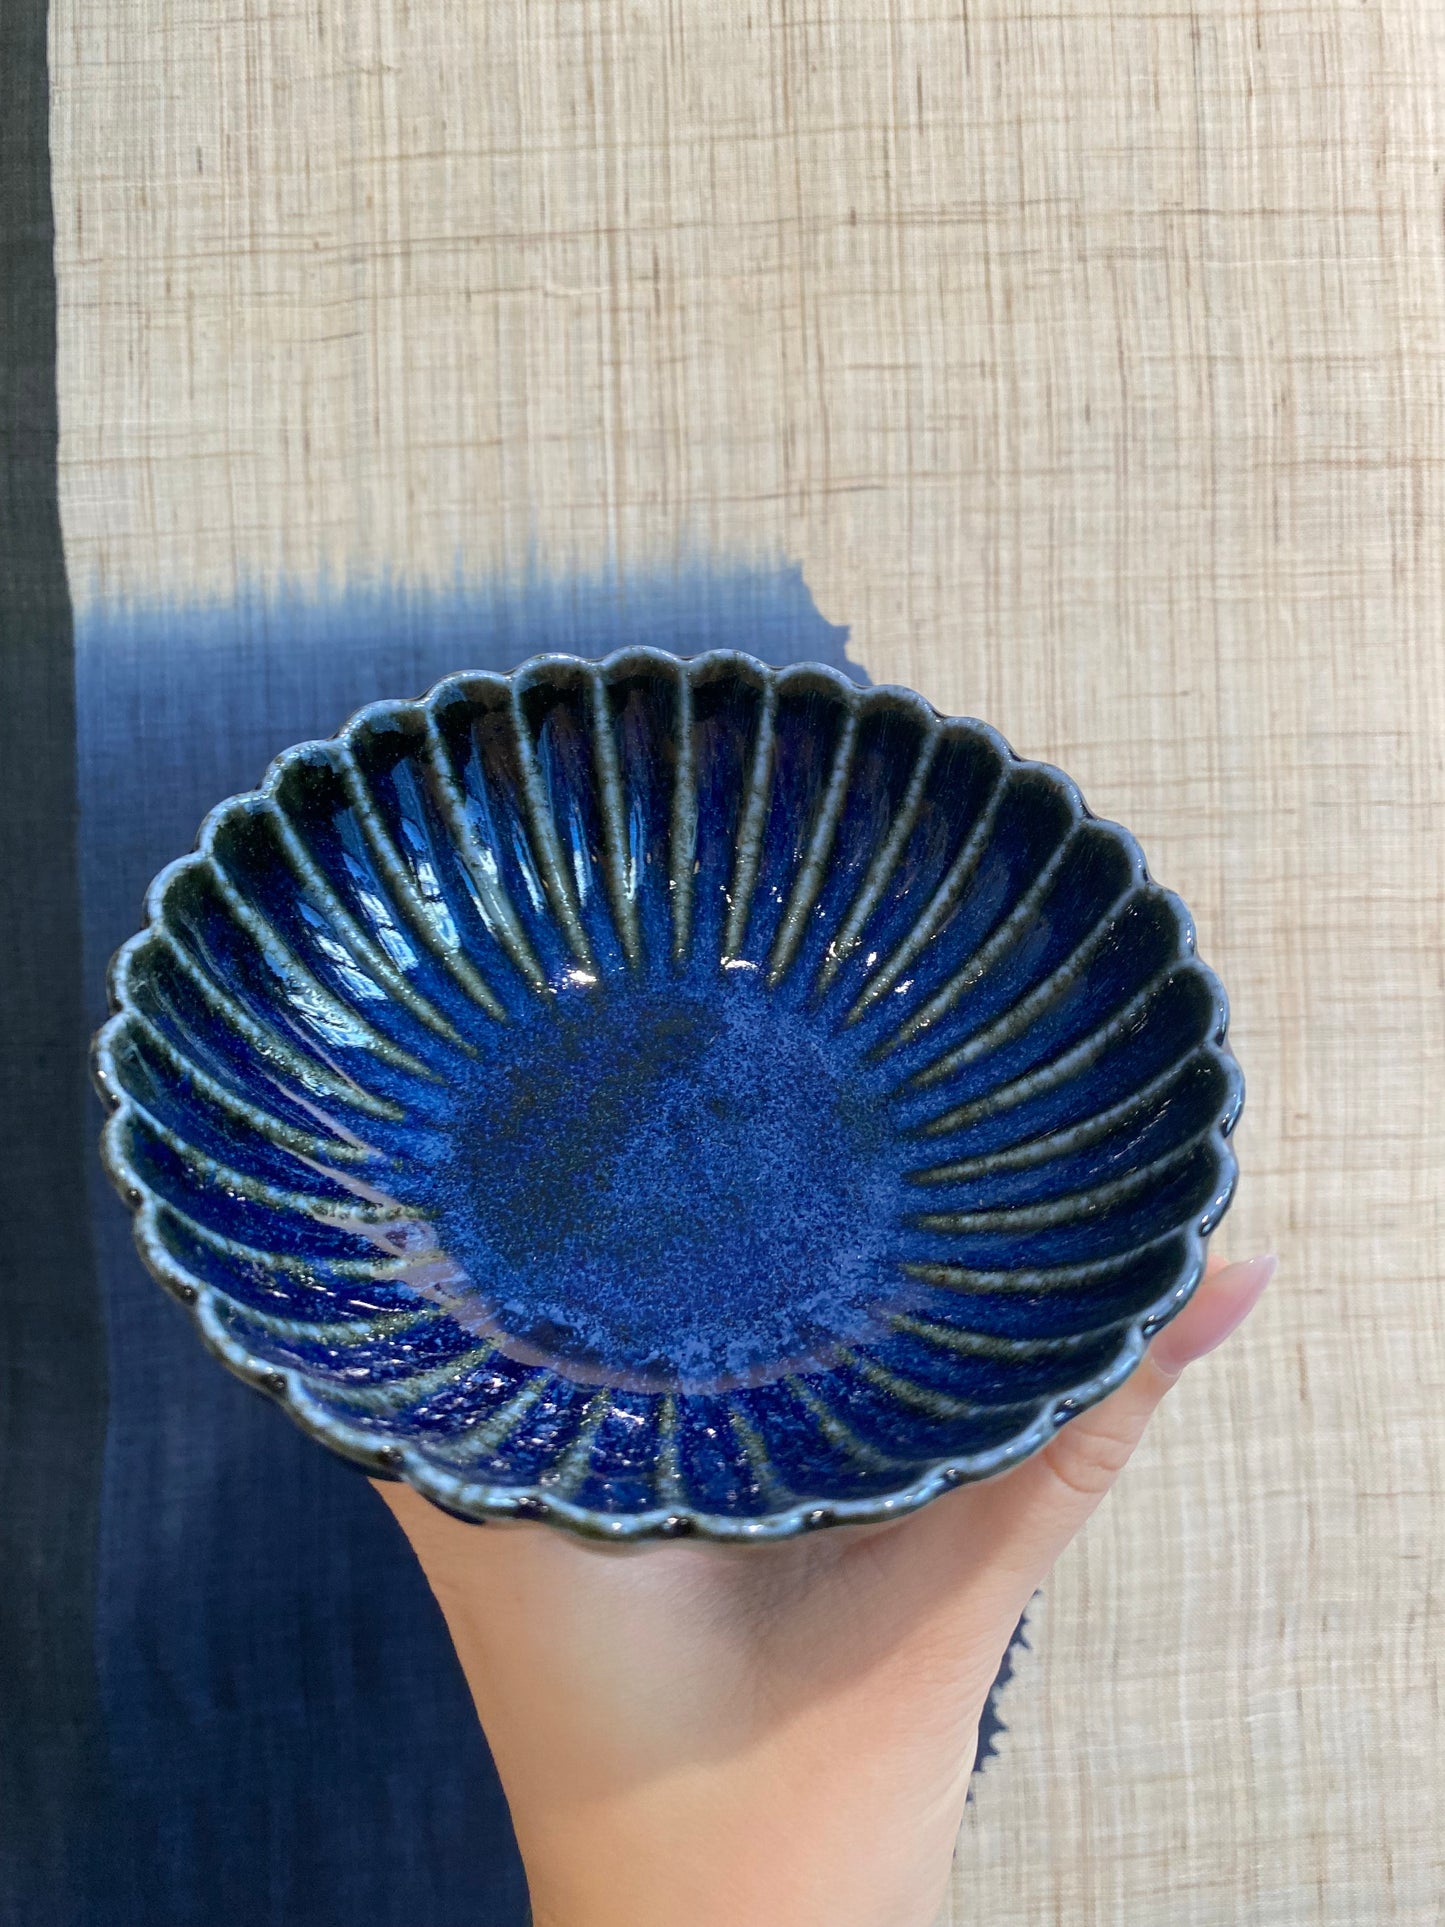 Blomsterformet skål med mørkeblå glasur